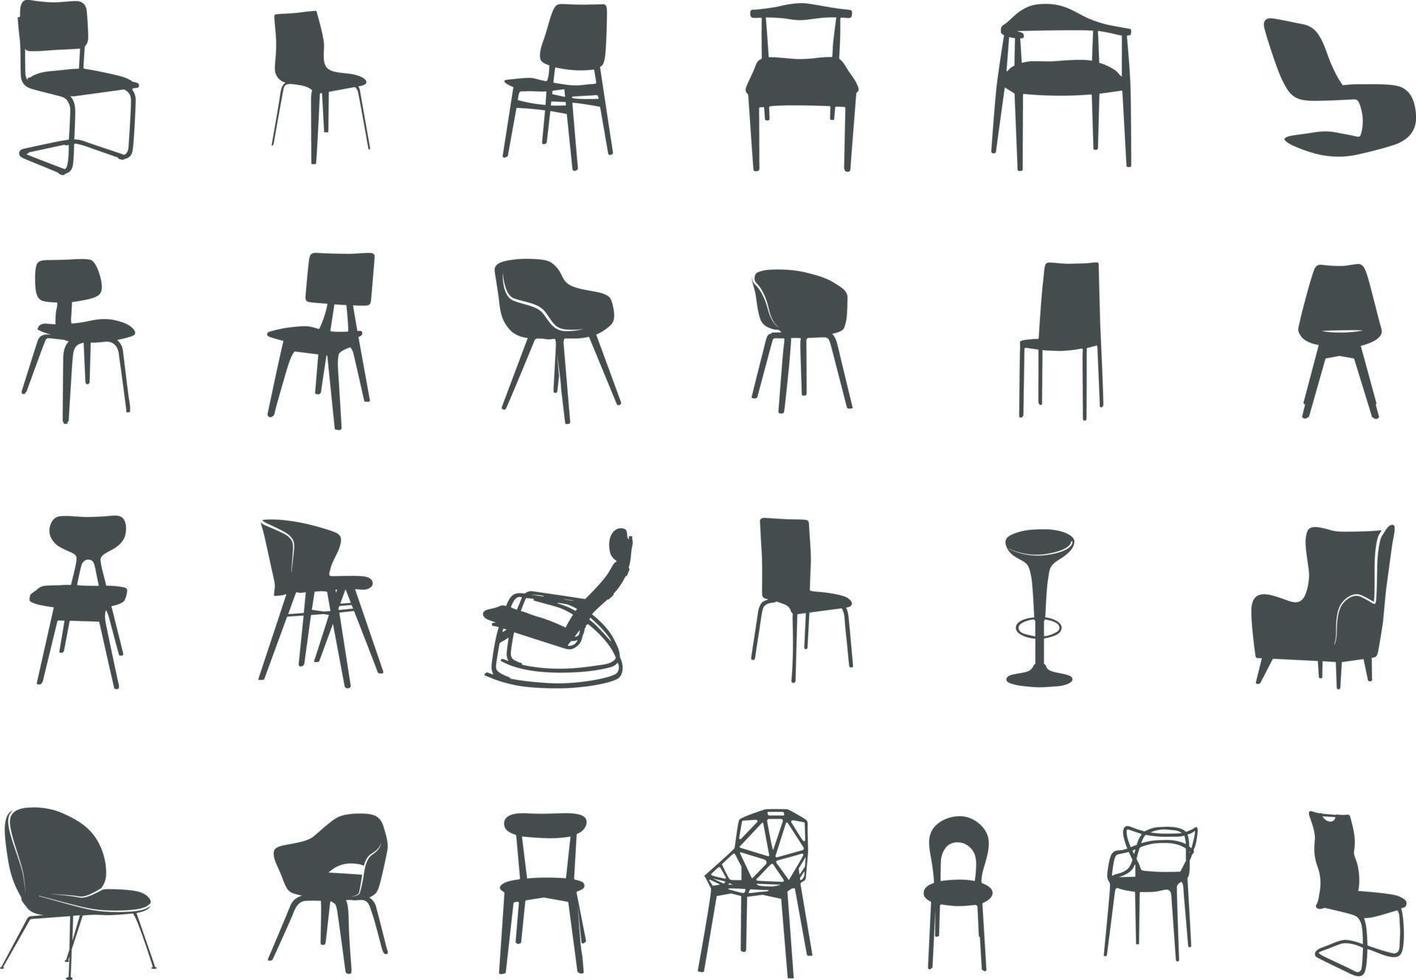 Modern chair silhouettes vector